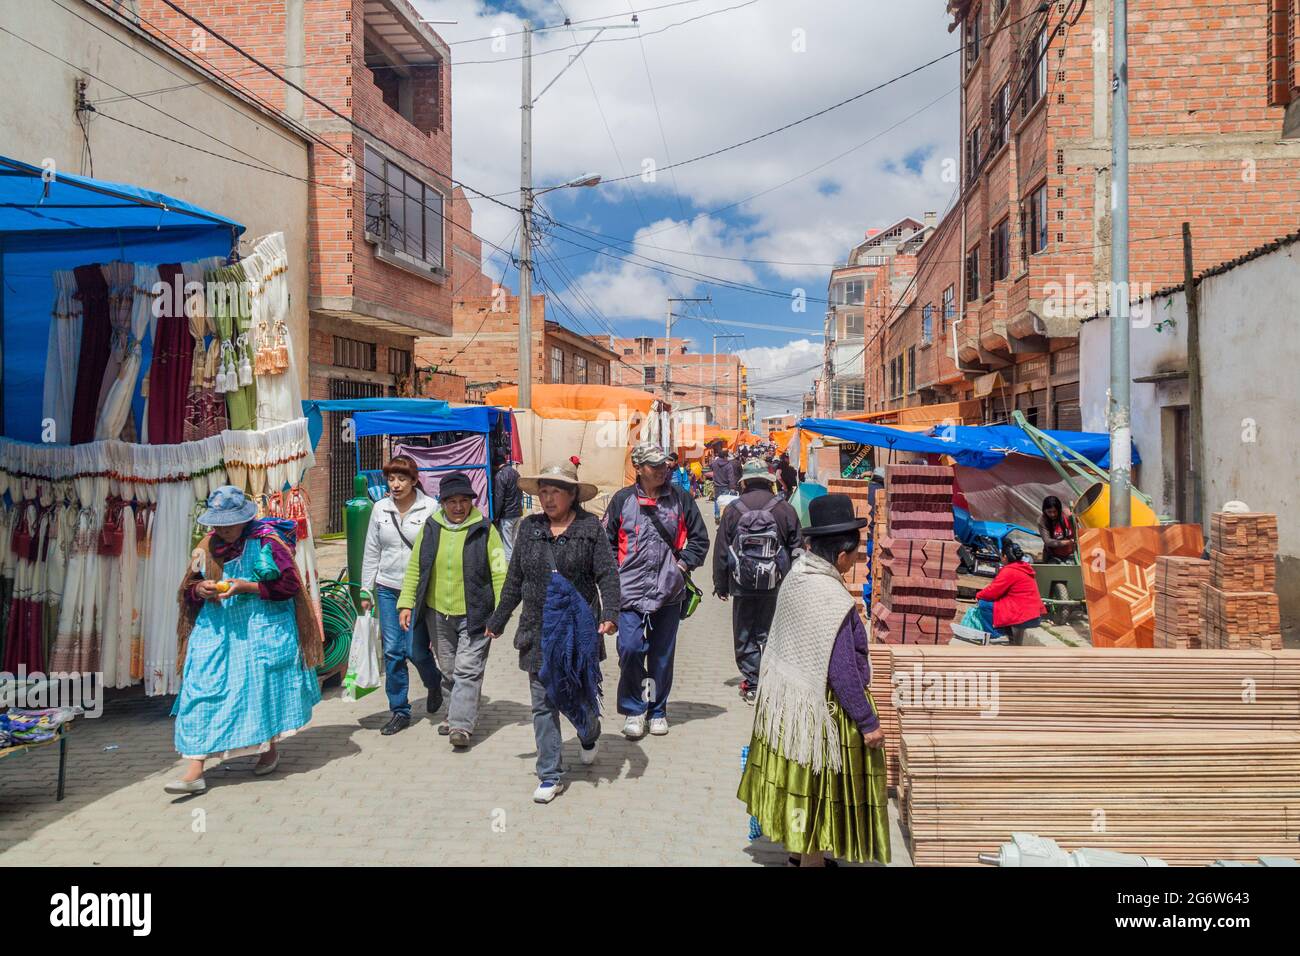 EL Alto, BOLIVIE - 23 AVRIL 2015 : les gens marchent sur un marché à El Alto, en Bolivie. Banque D'Images